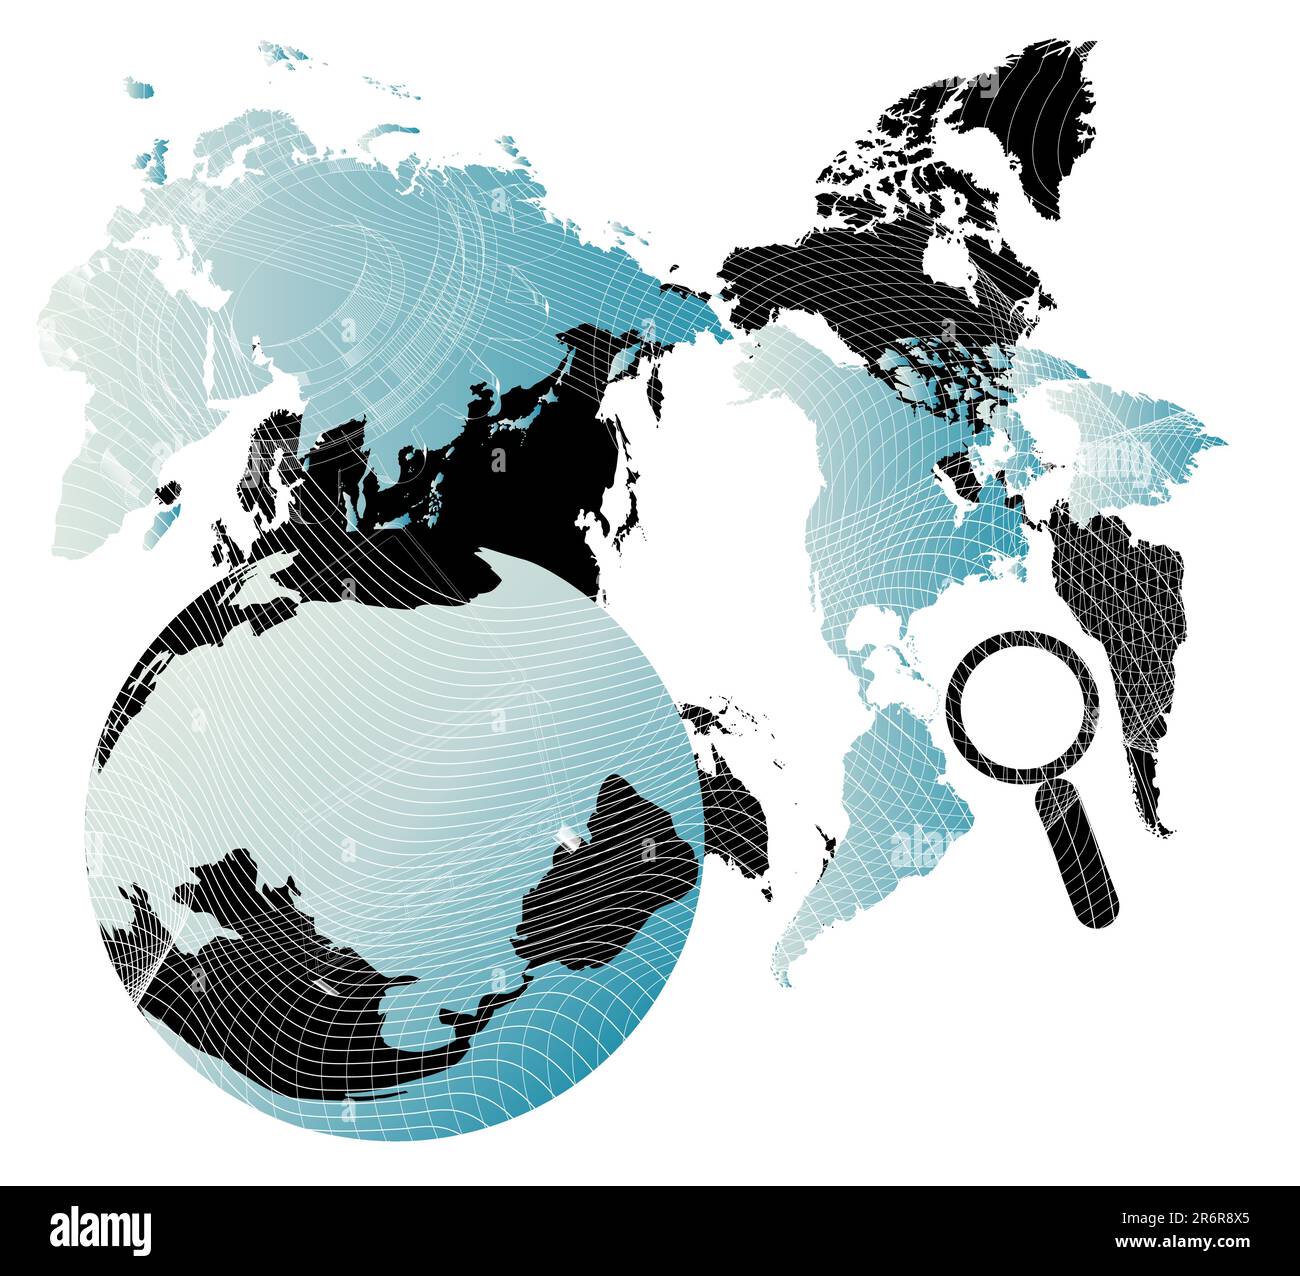 Vektor dargestellt Hintergrund mit Weltkarte und Objekte von Kommunikations- und Technologien Stock Vektor